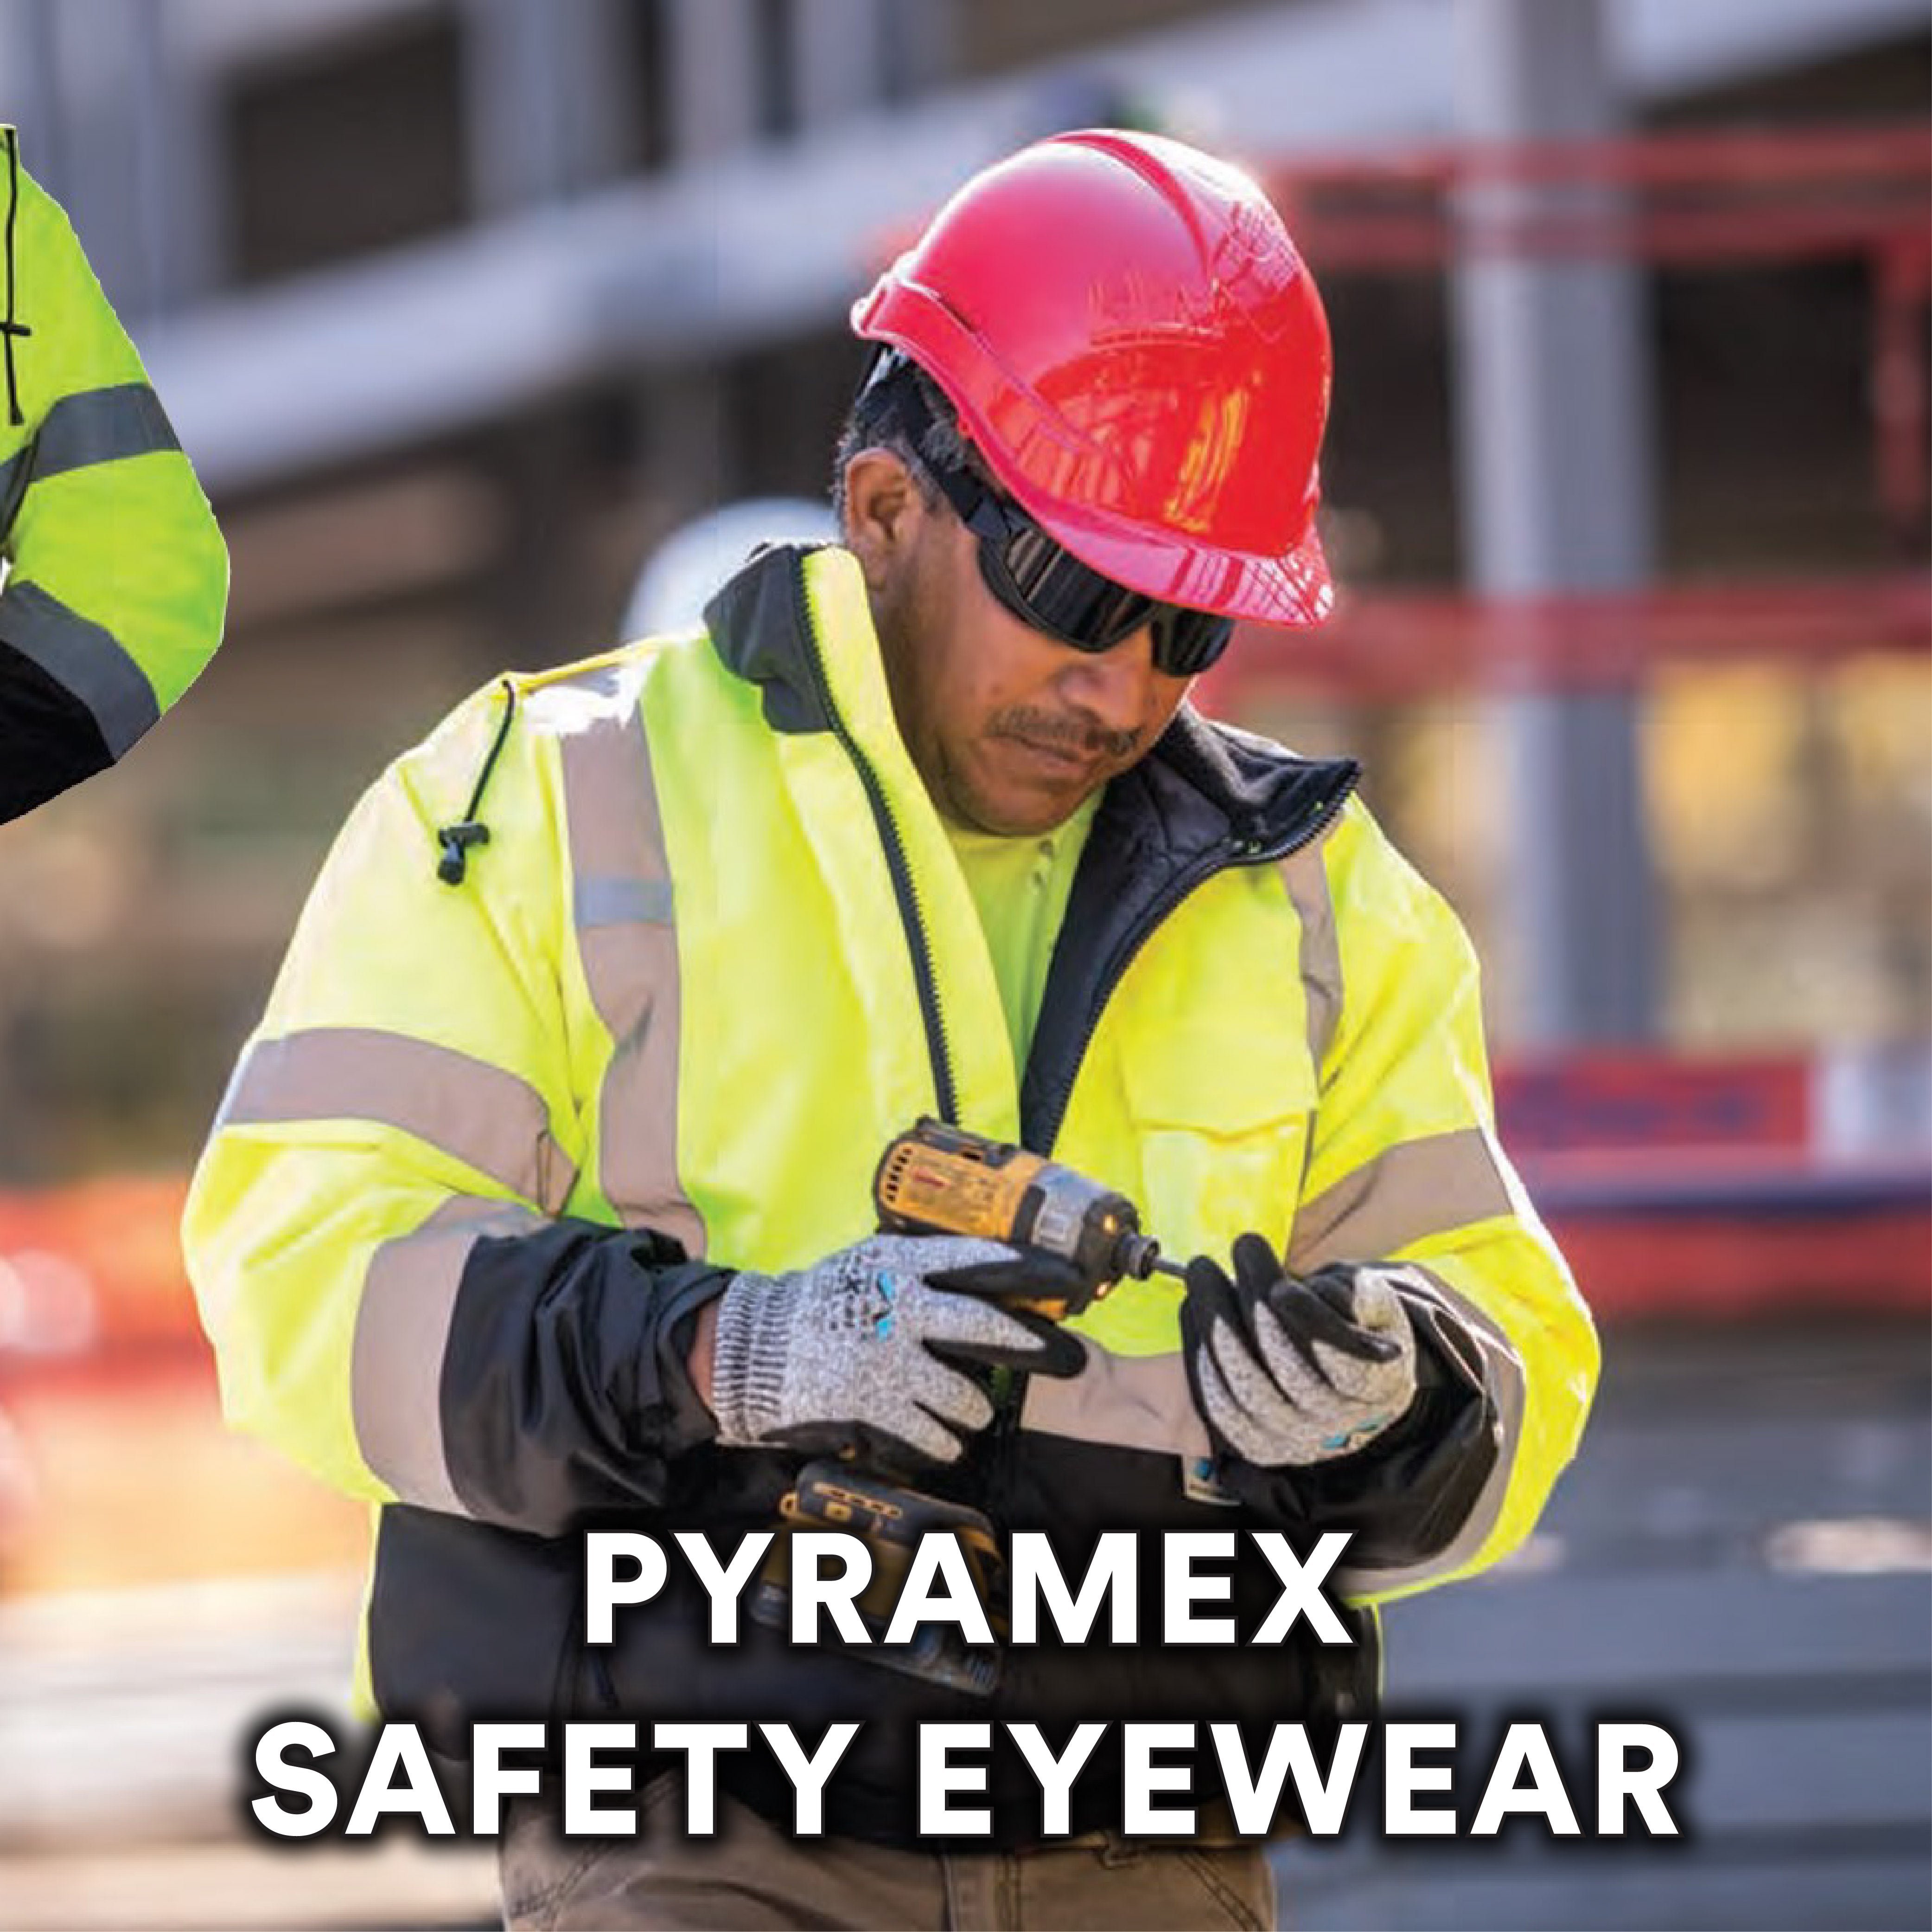 Pyramex Safety Eyewear